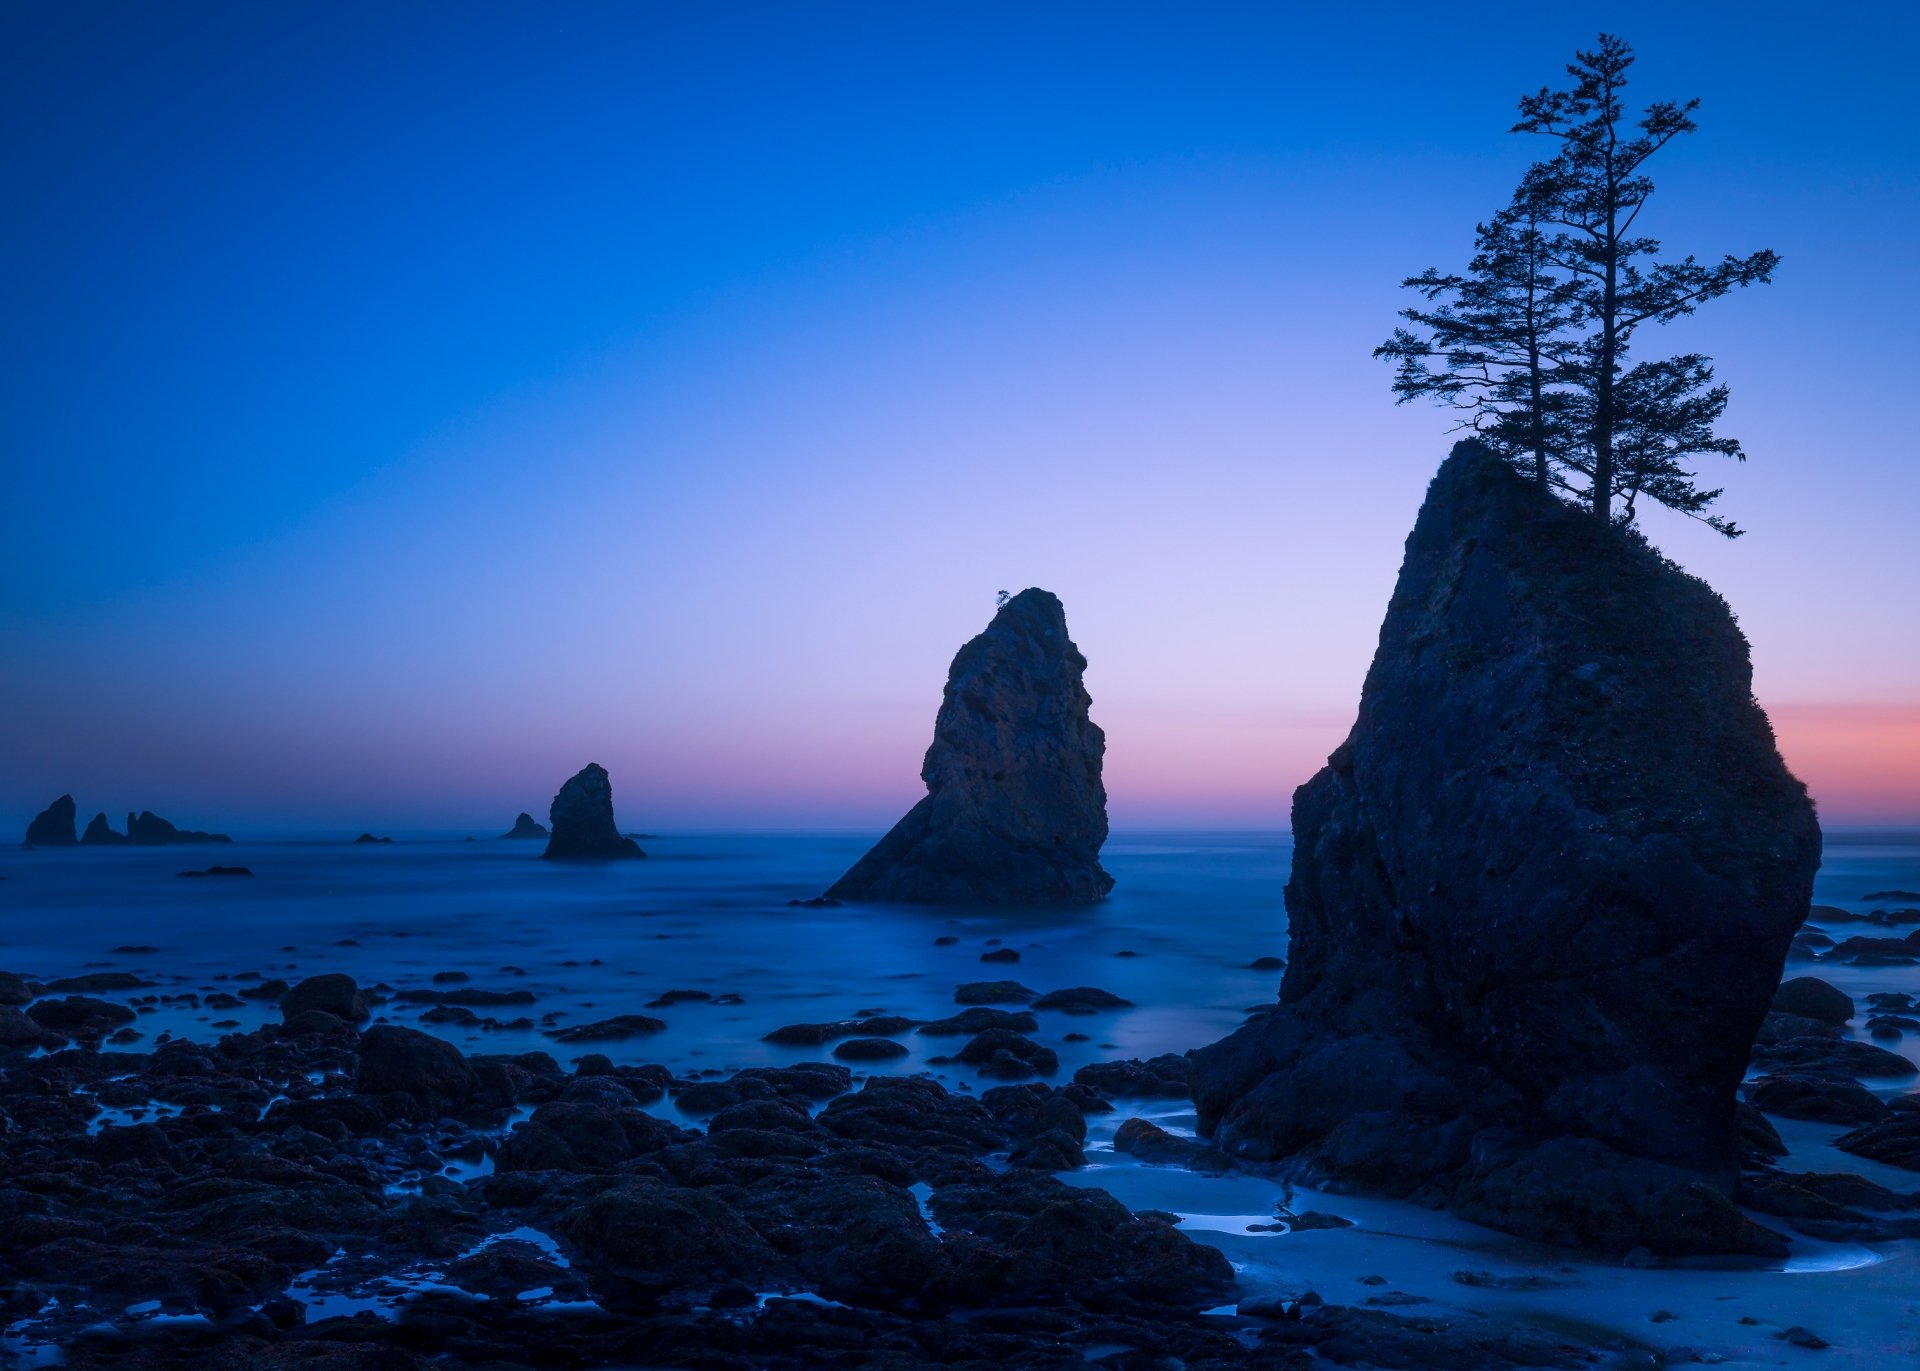 A serene ocean horizon under a clear sky, a beautiful HD desktop wallpaper capturing the vast beauty of nature.